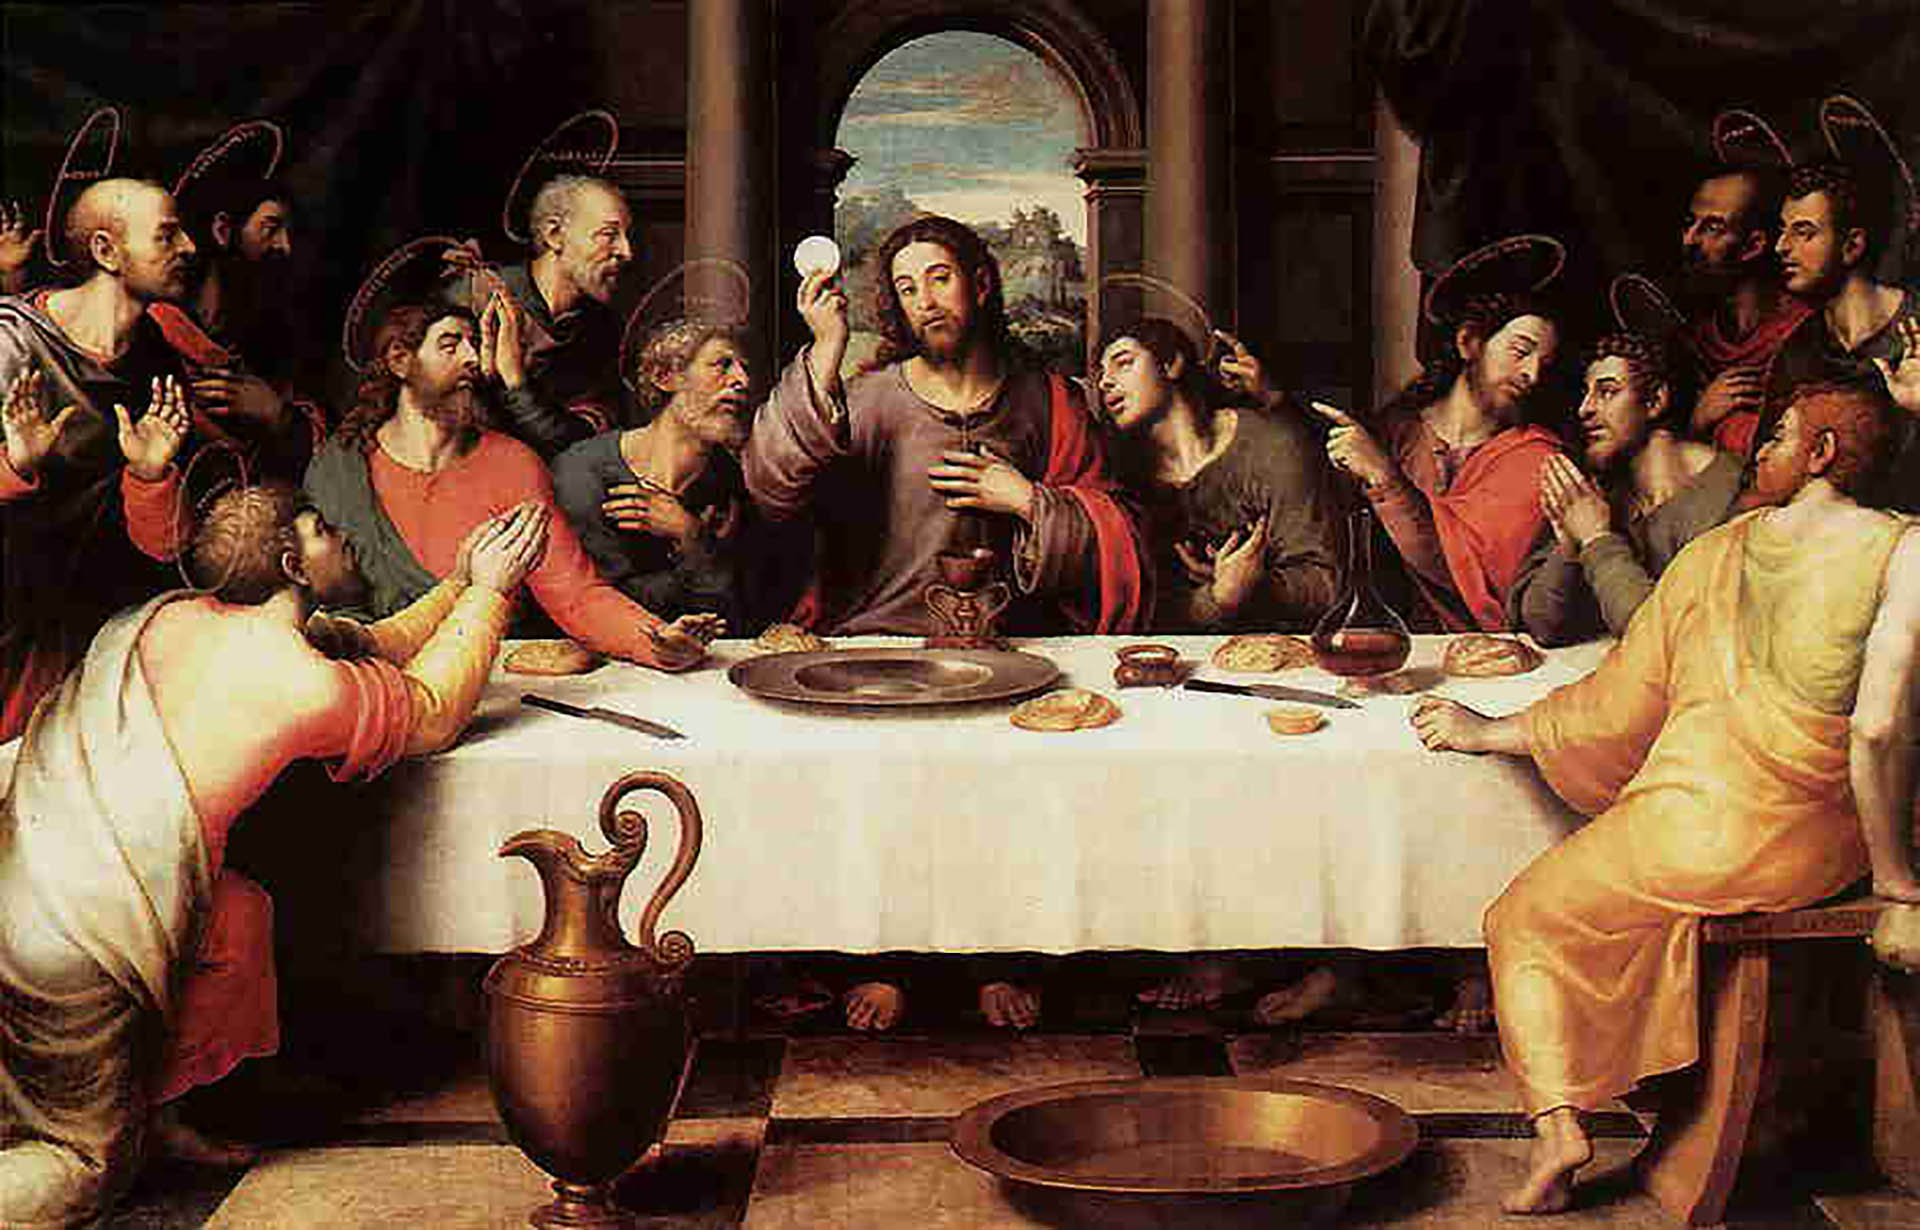 La ultima cena es una obra del pintor Juan de Juanes, pintada entre 1555 y 1562, y que pertenece a la colección del Museo del Prado